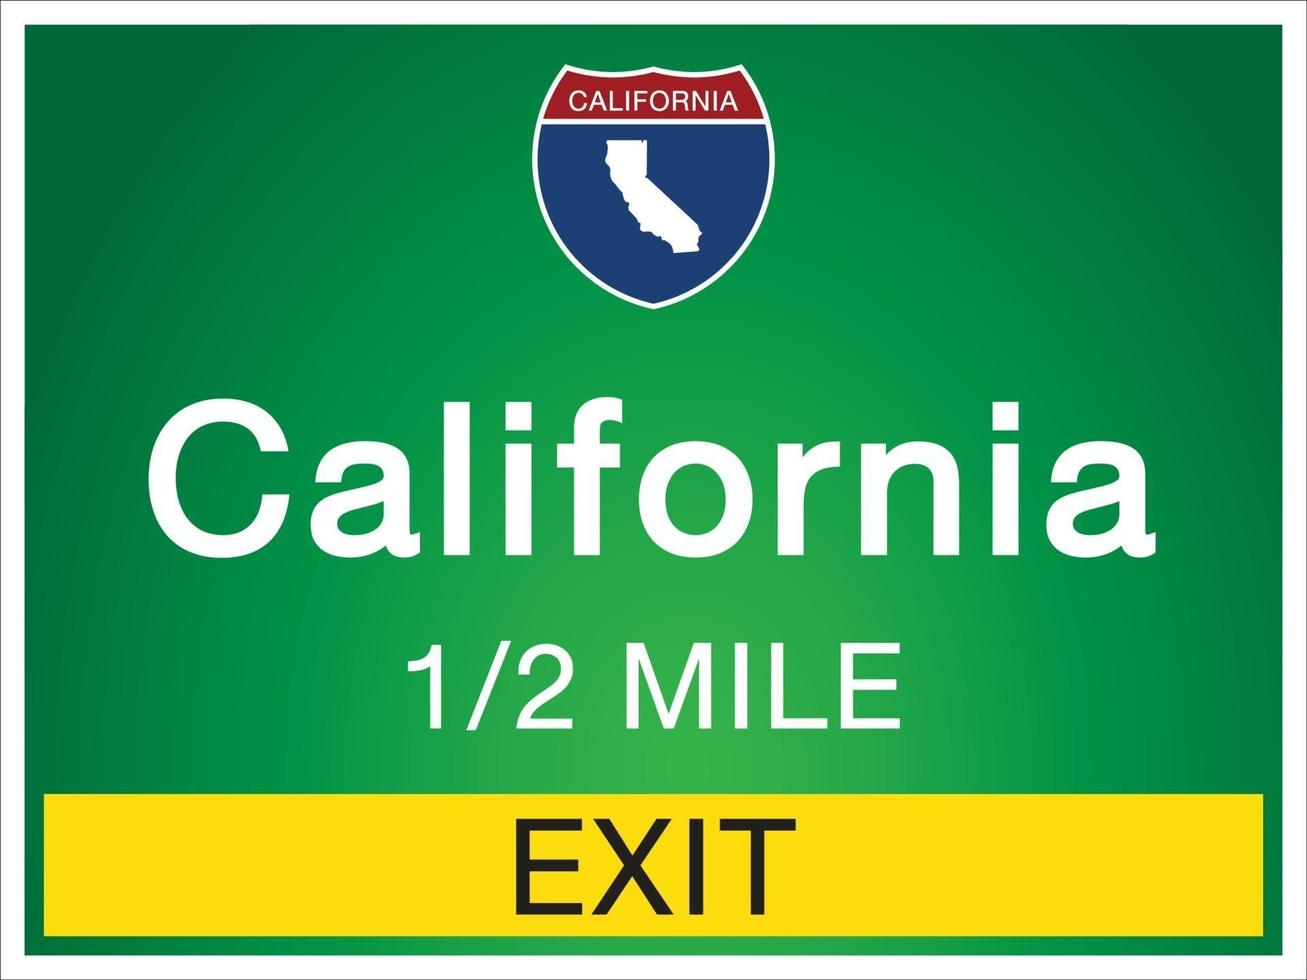 sinais de rodovia antes da saída para informações e mapas do estado da califórnia vetor